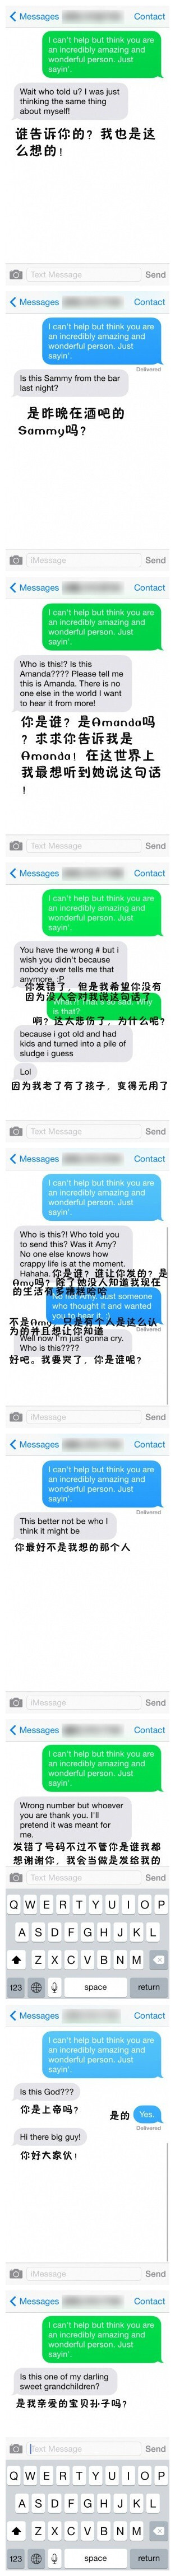 国外某组织做了一个有趣的实验，给200个陌生的号码发短信说“我认为你是个很棒的人”，85%的回复说“你是谁？怎么知道我的号码的？”......（转自：http://weibo.com/p/1005052141095377/weibo?from=page_100505_hom…